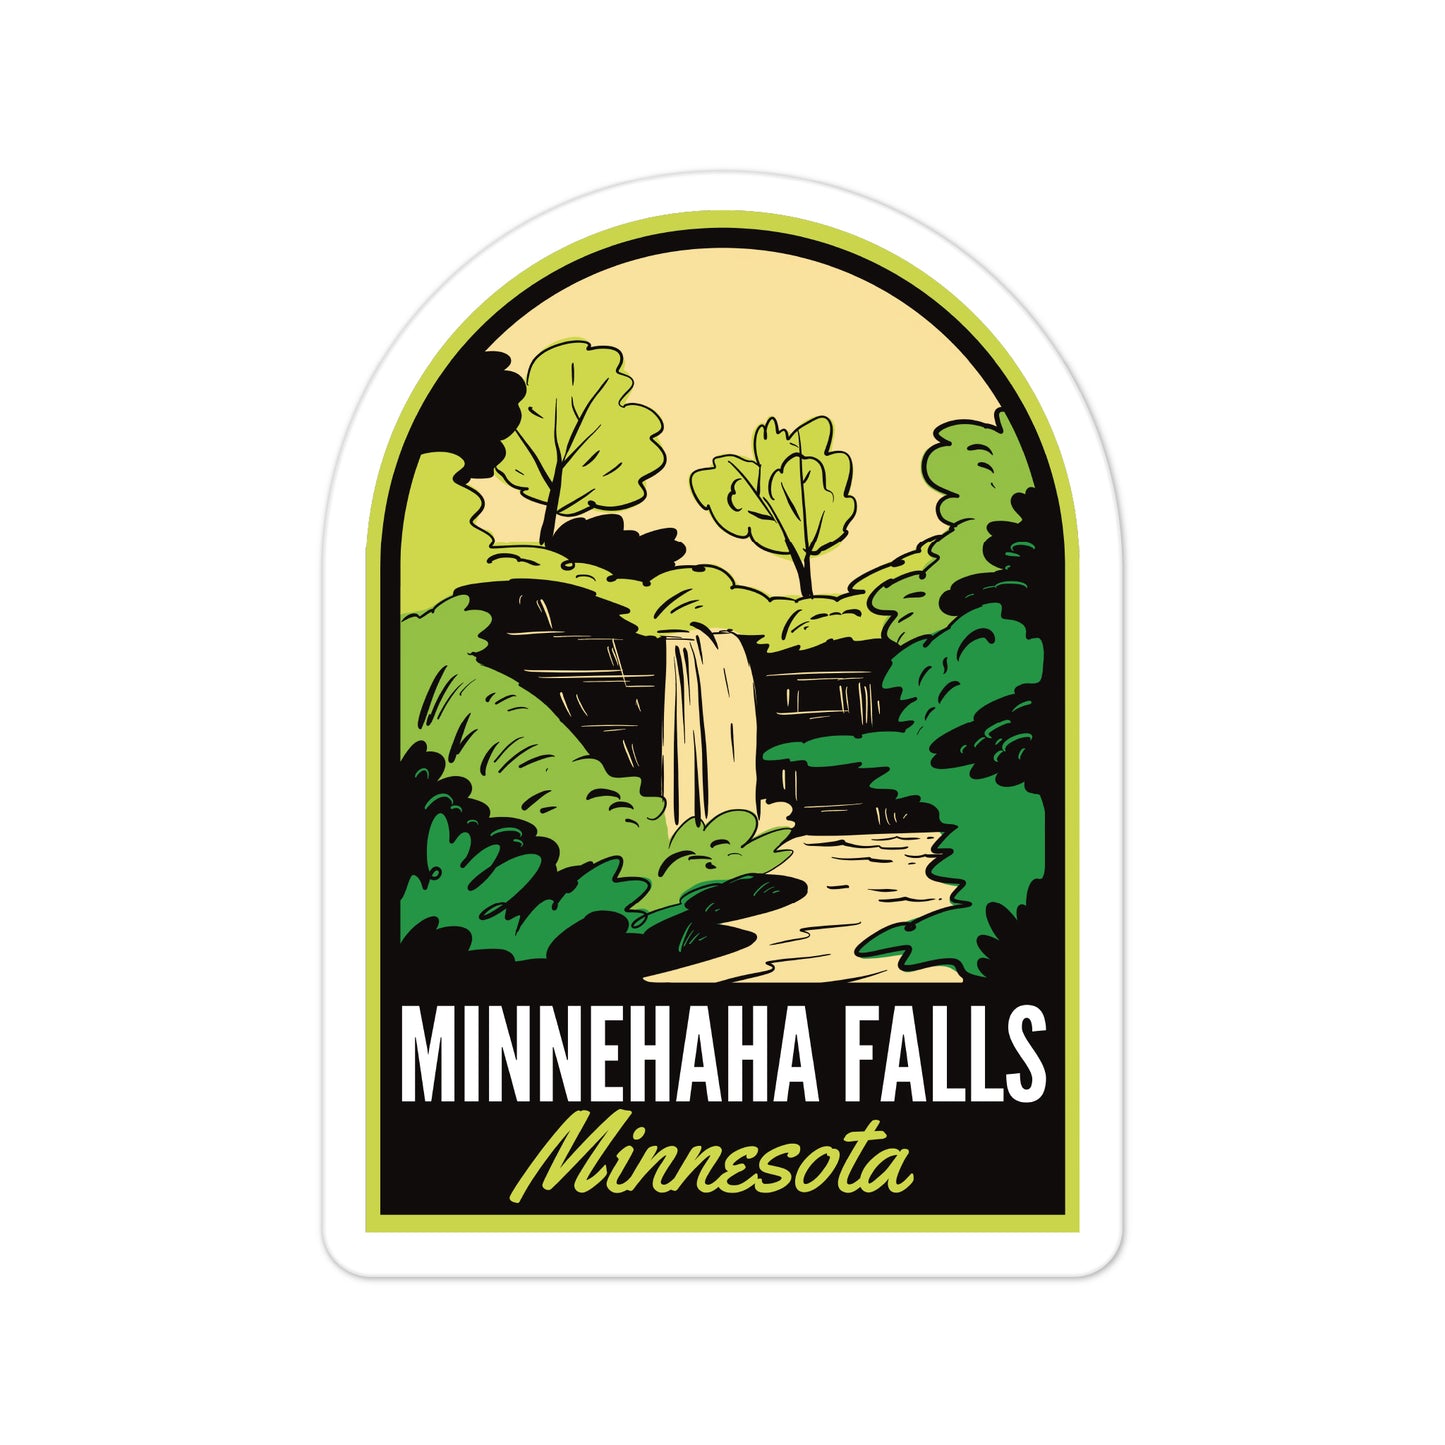 A sticker of Minnehaha Falls